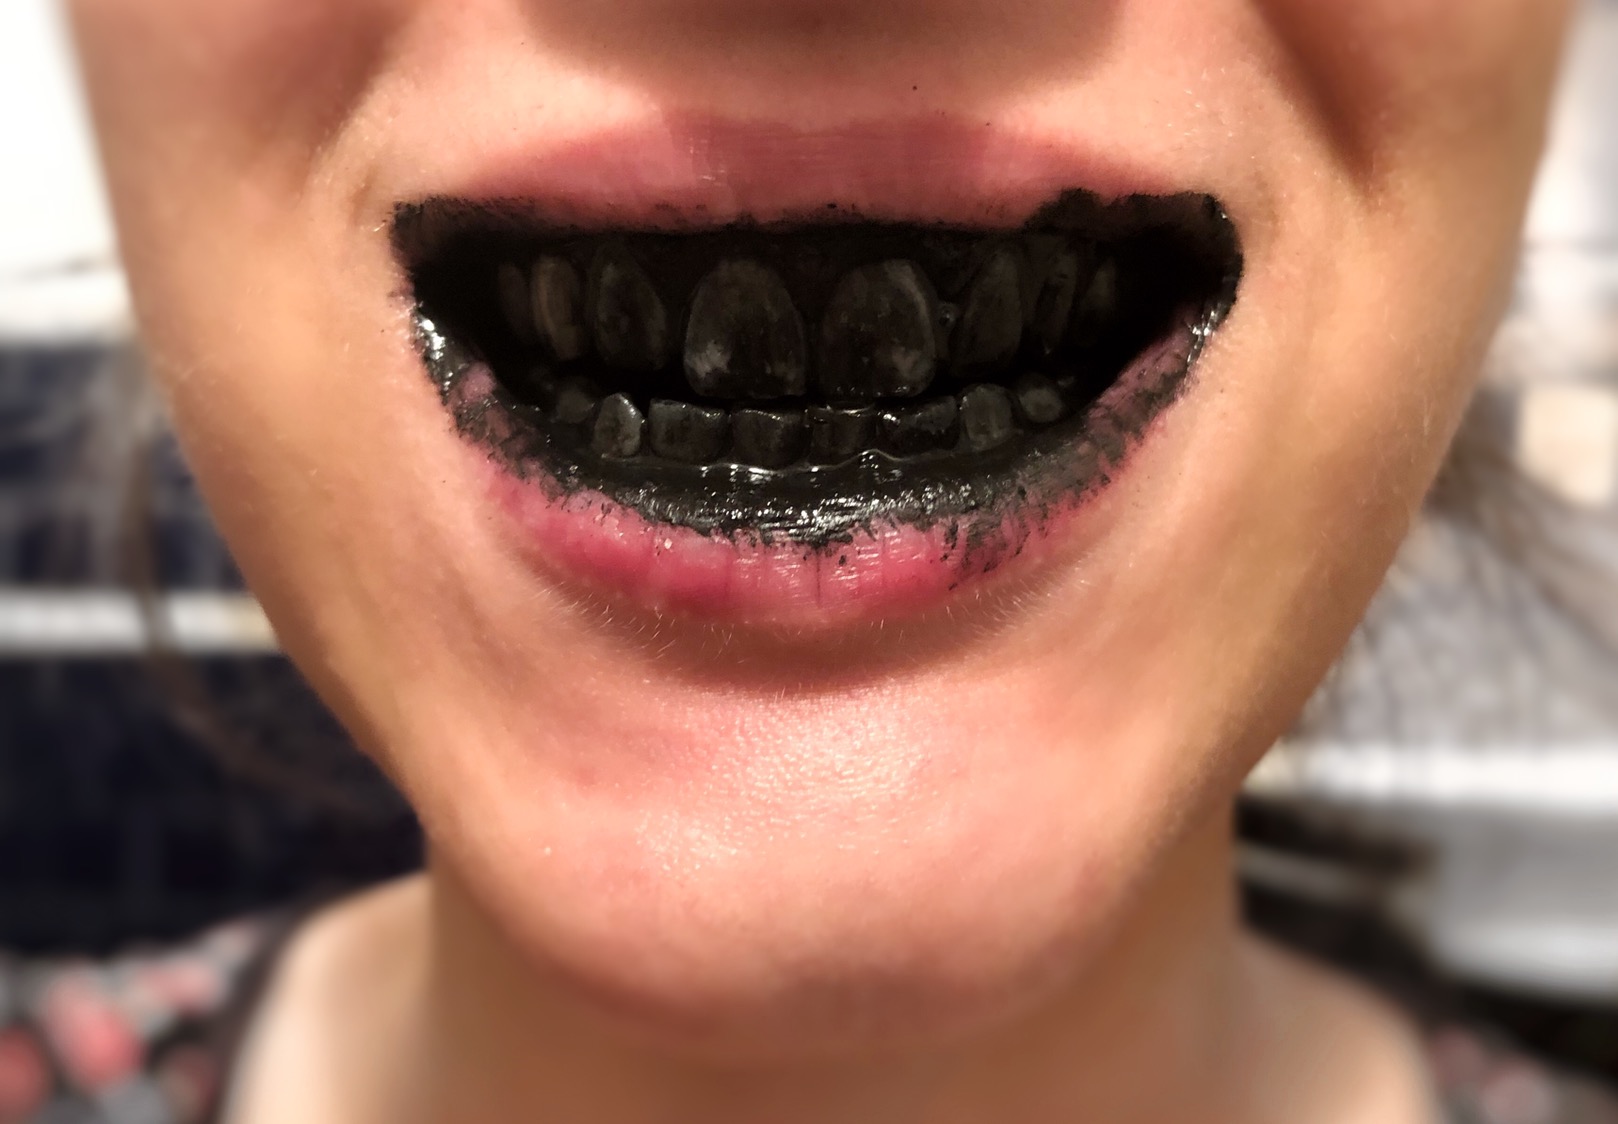 Fekete porral hófehér fogak? Tényleg működik? - SmileOn teszt